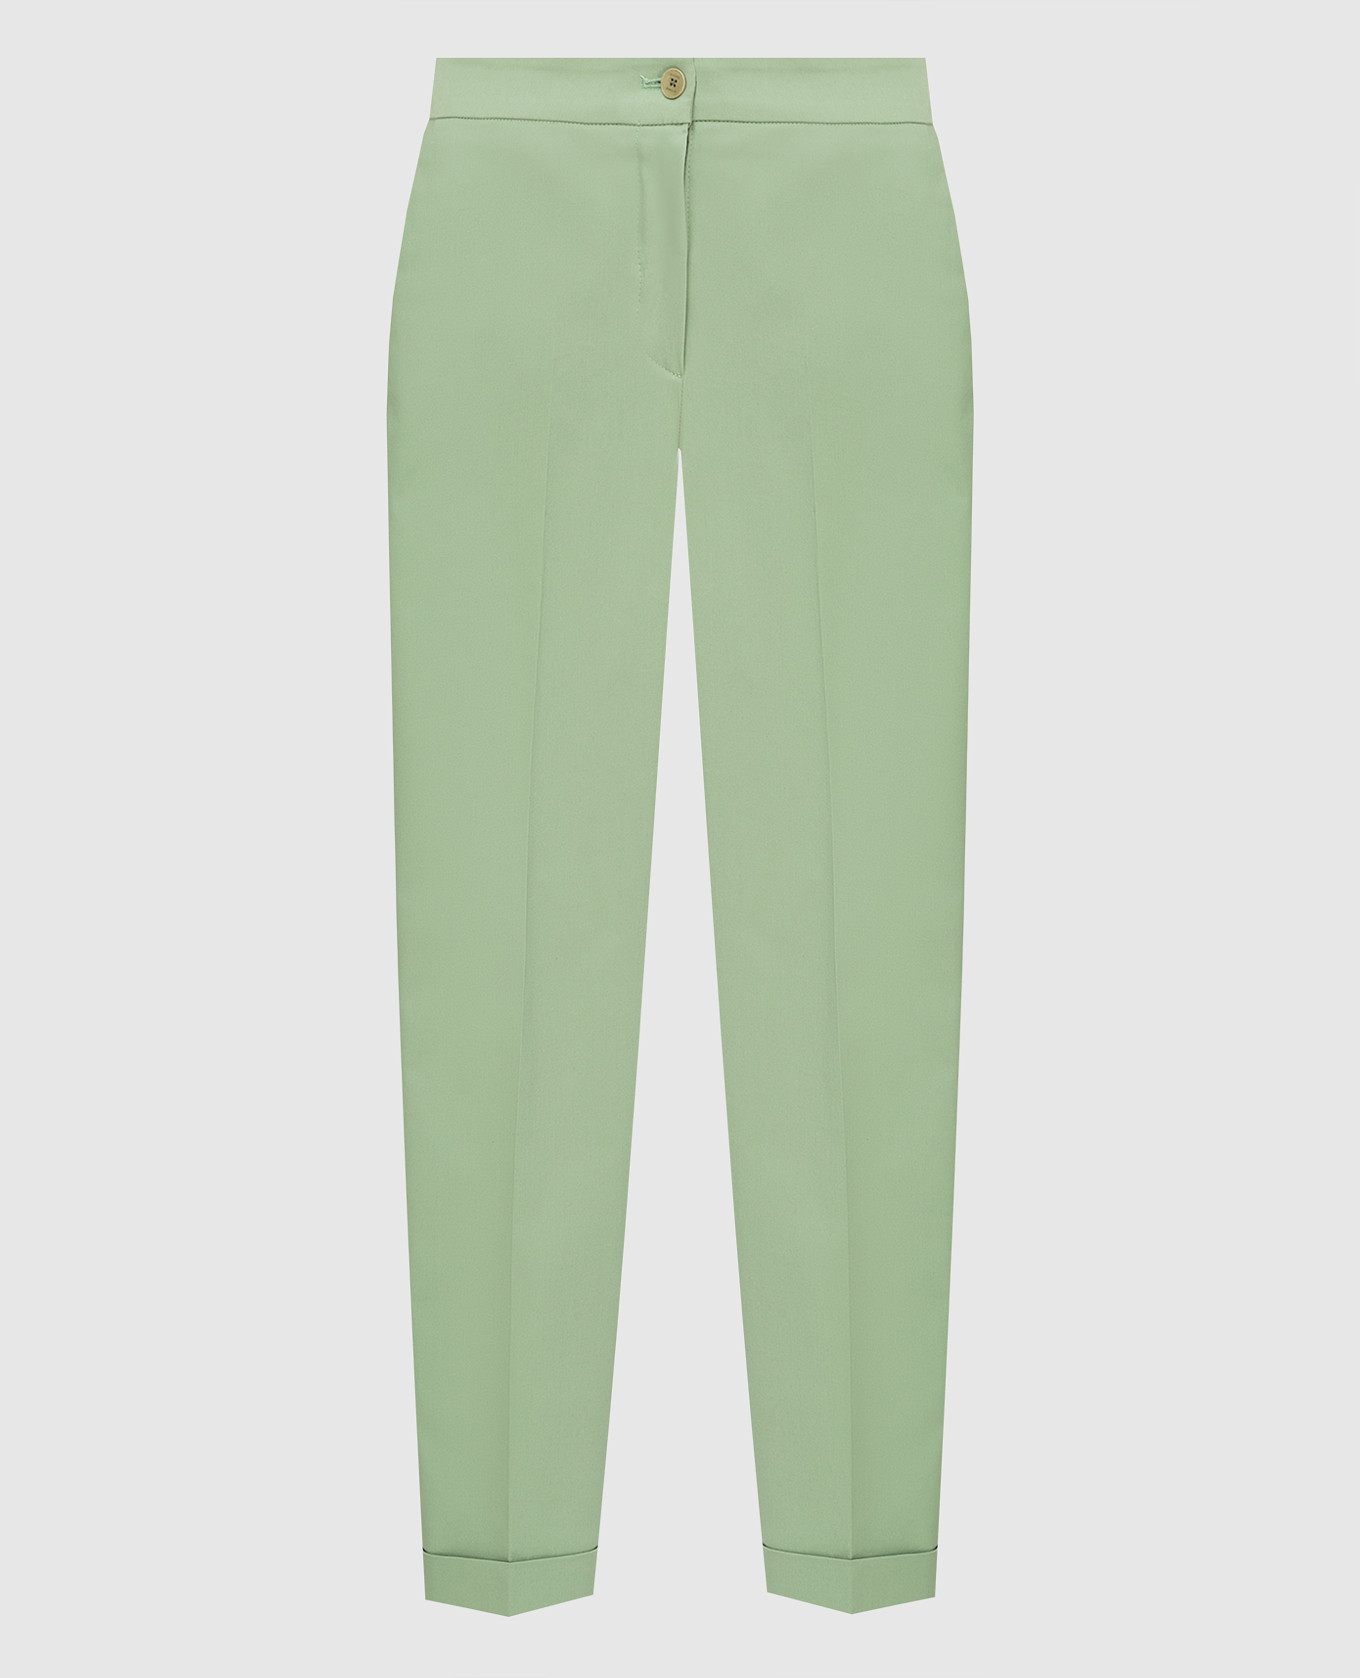 Зеленые брюки